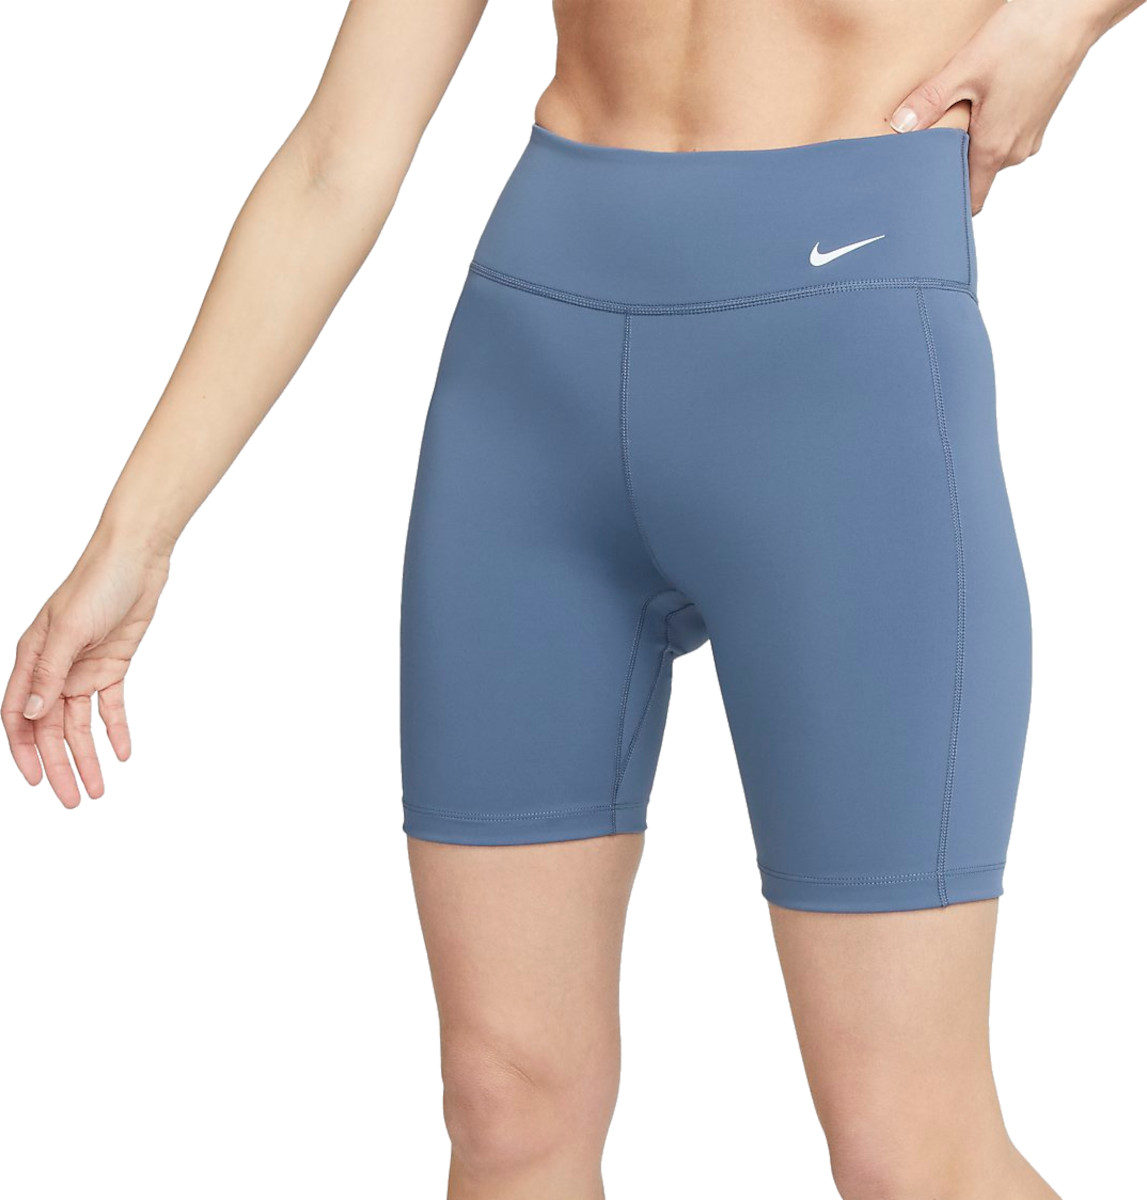 Dámské 18cm cyklistické kraťasy Nike One Leak Protection: Menstruace